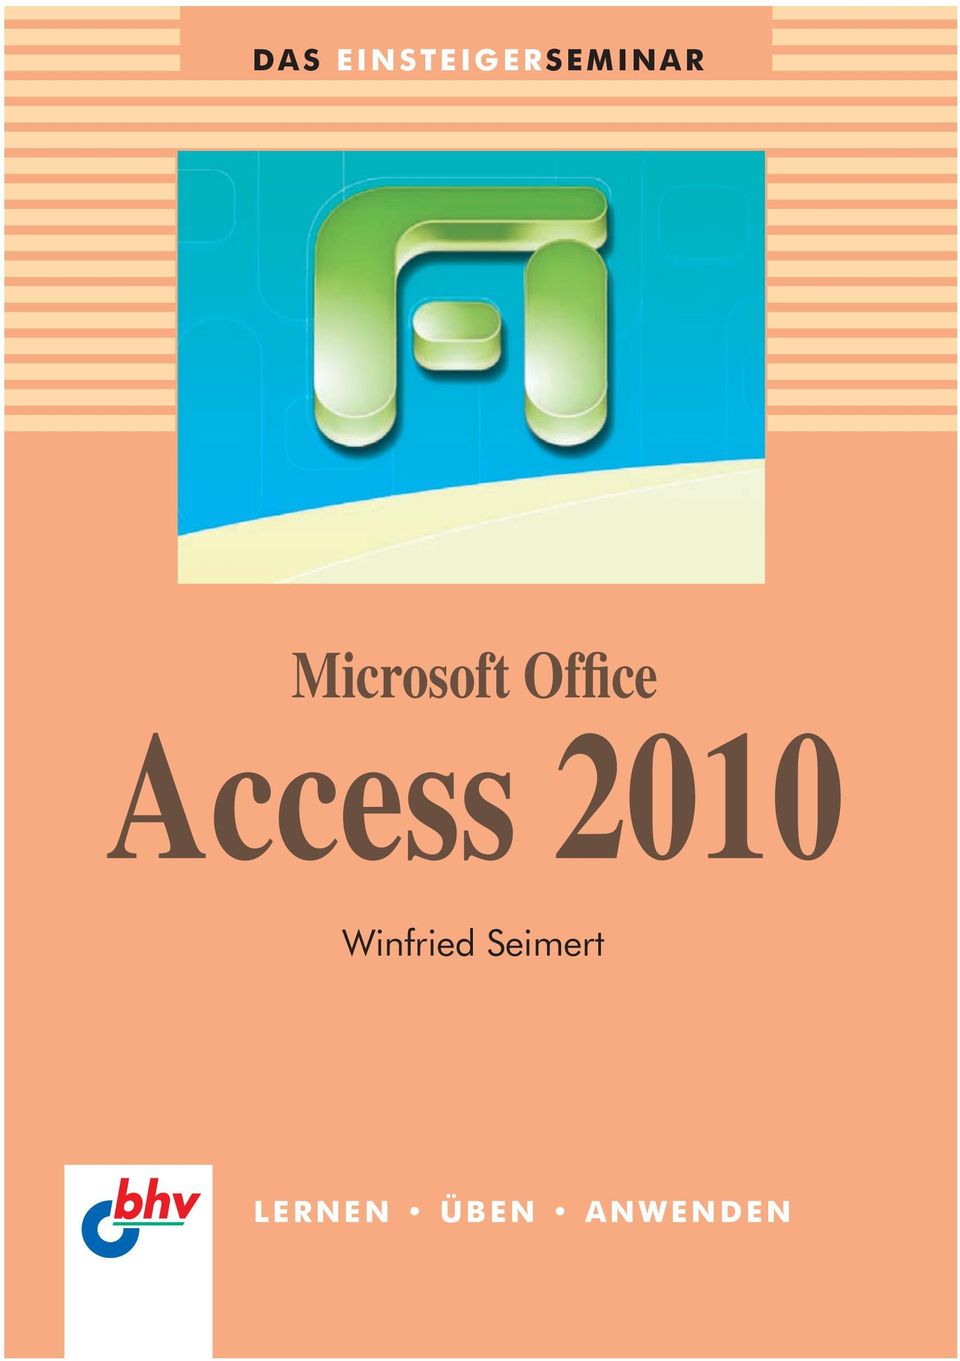 Access 2010 Winfried